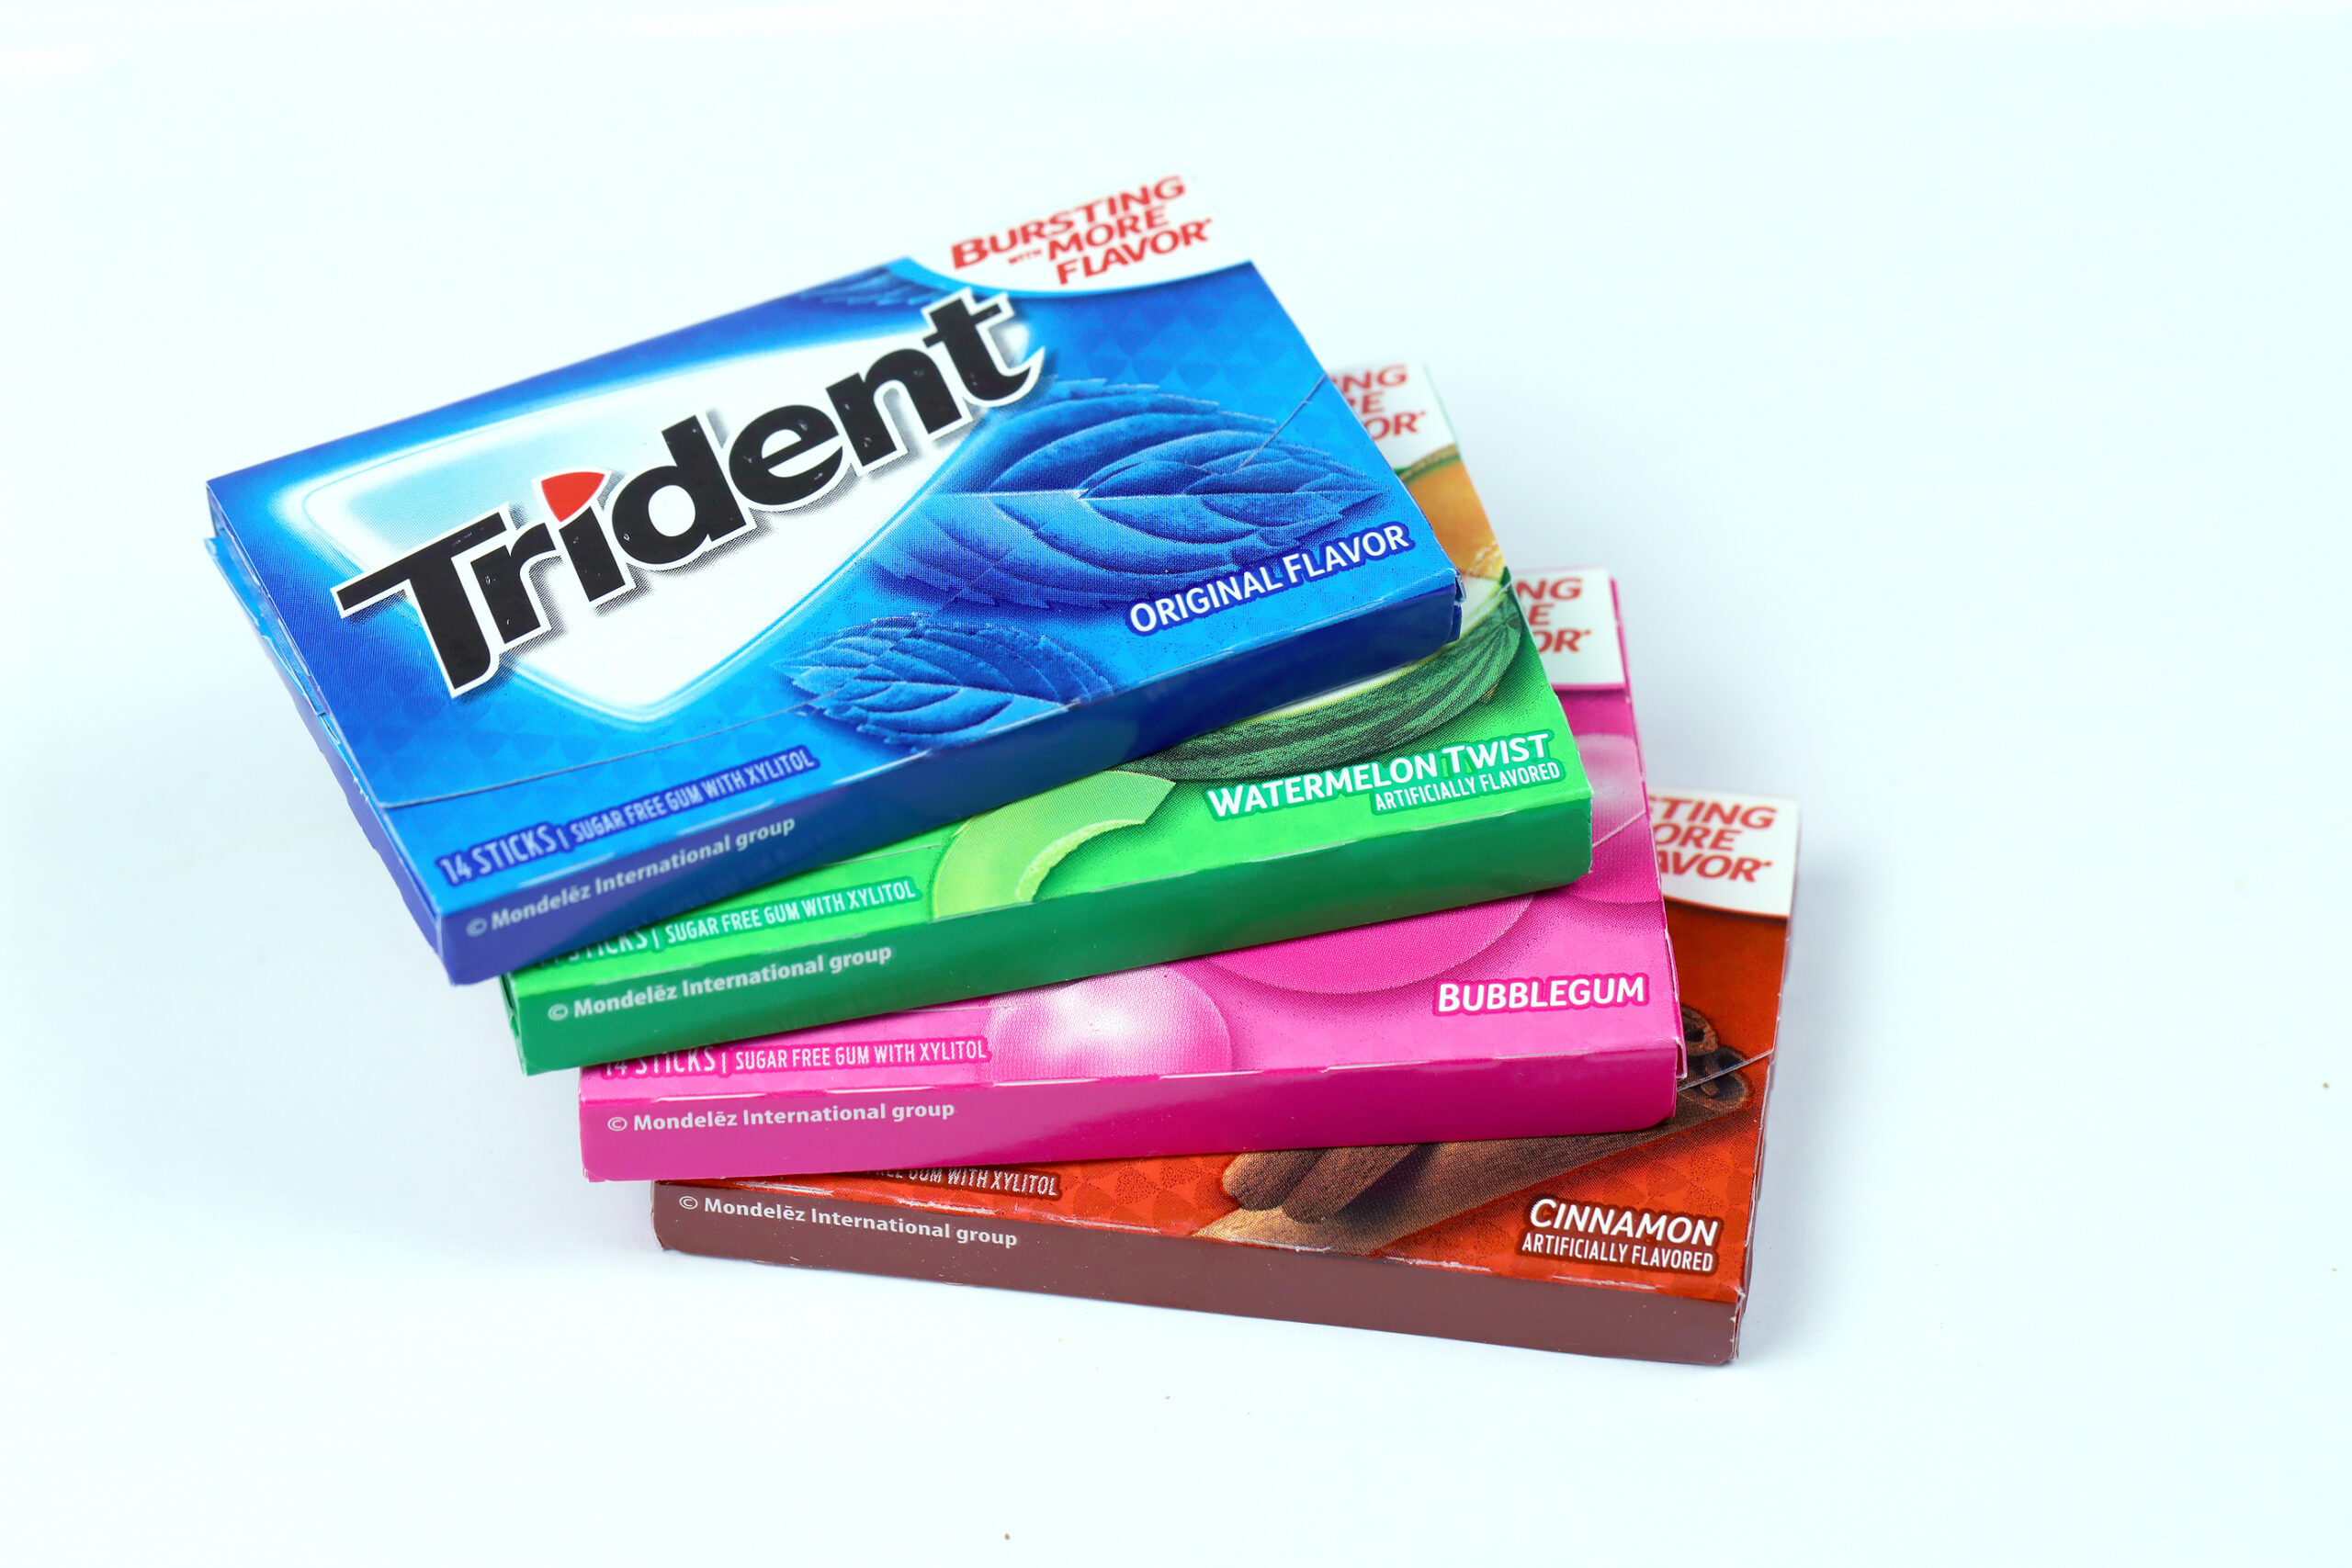 Lawsuit Over Trident ‘Original Flavor’ Gum Is Dismissed